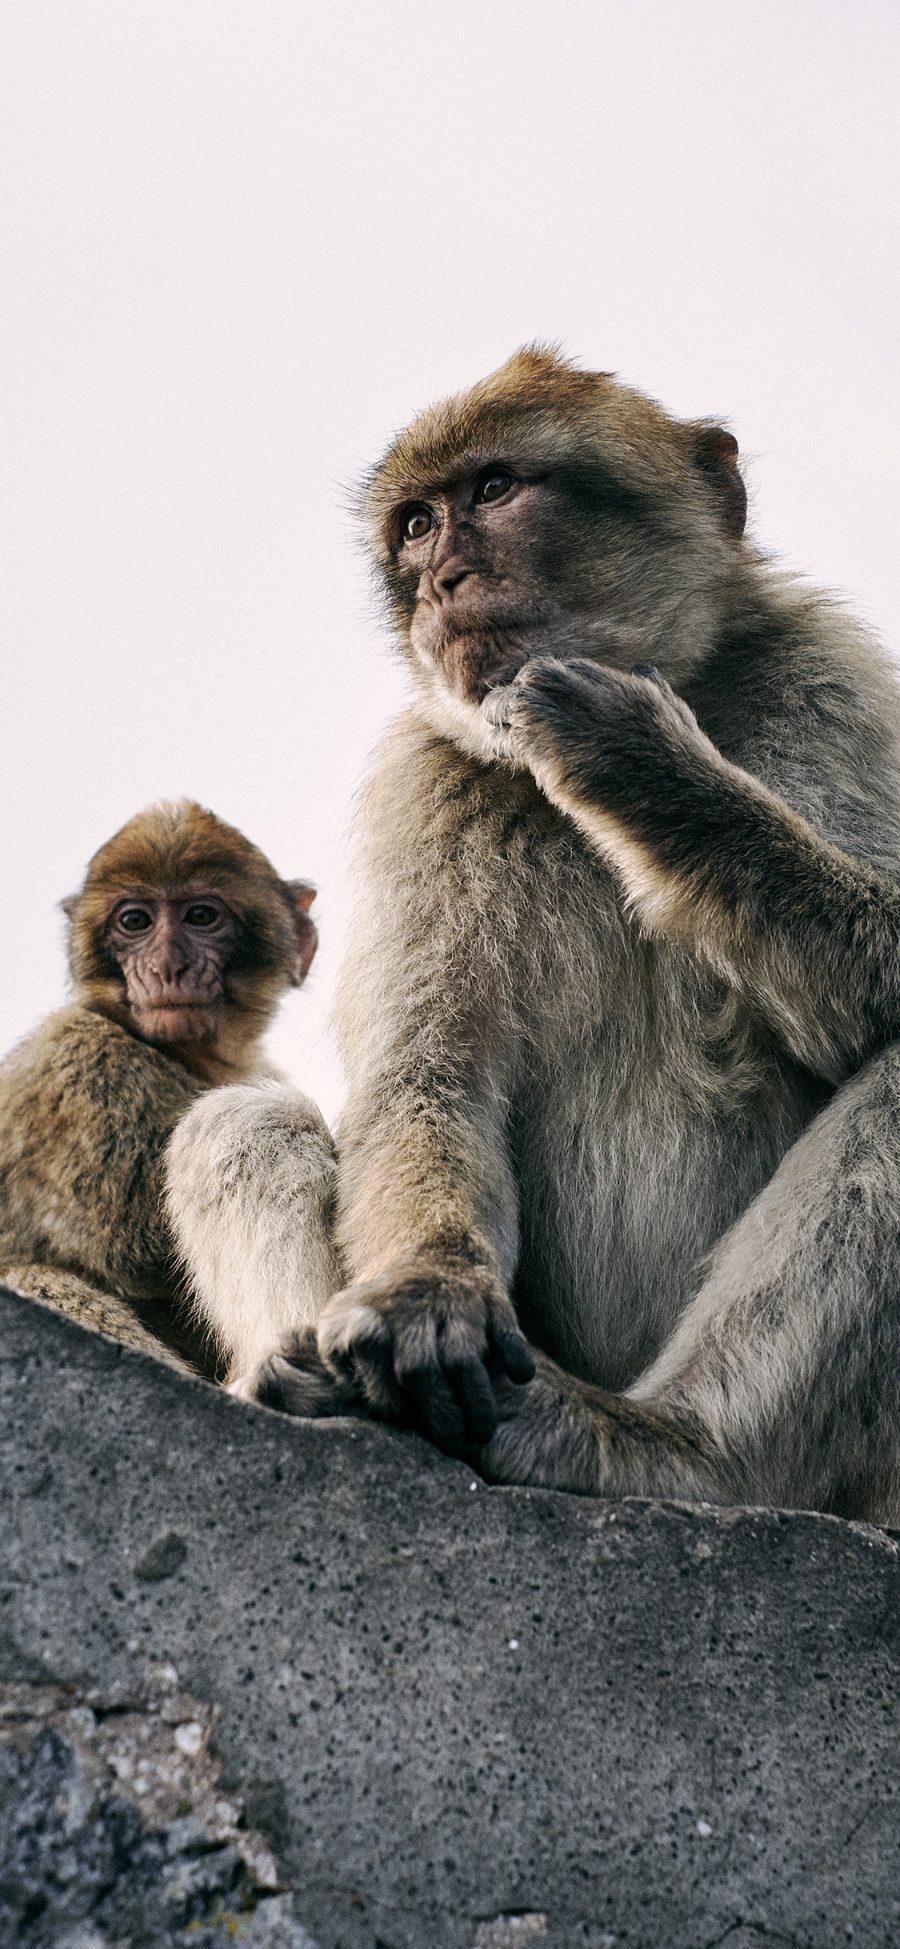 [2436×1125]猴子 猿类 聪明 毛发 苹果手机壁纸图片